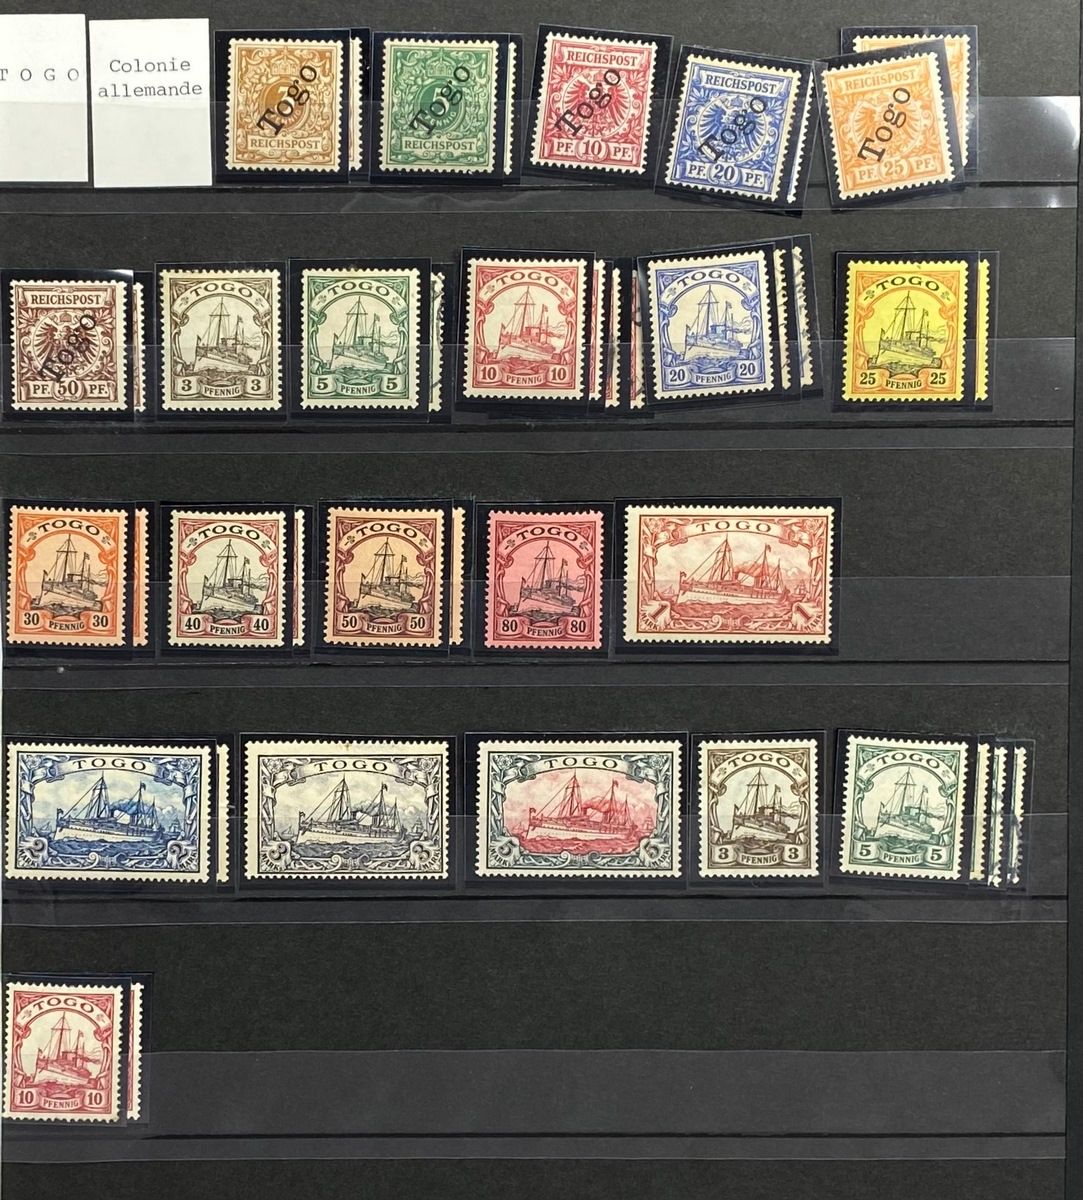 Null TOGO
Bella serie, colonia tedesca, francobolli di occupazione.